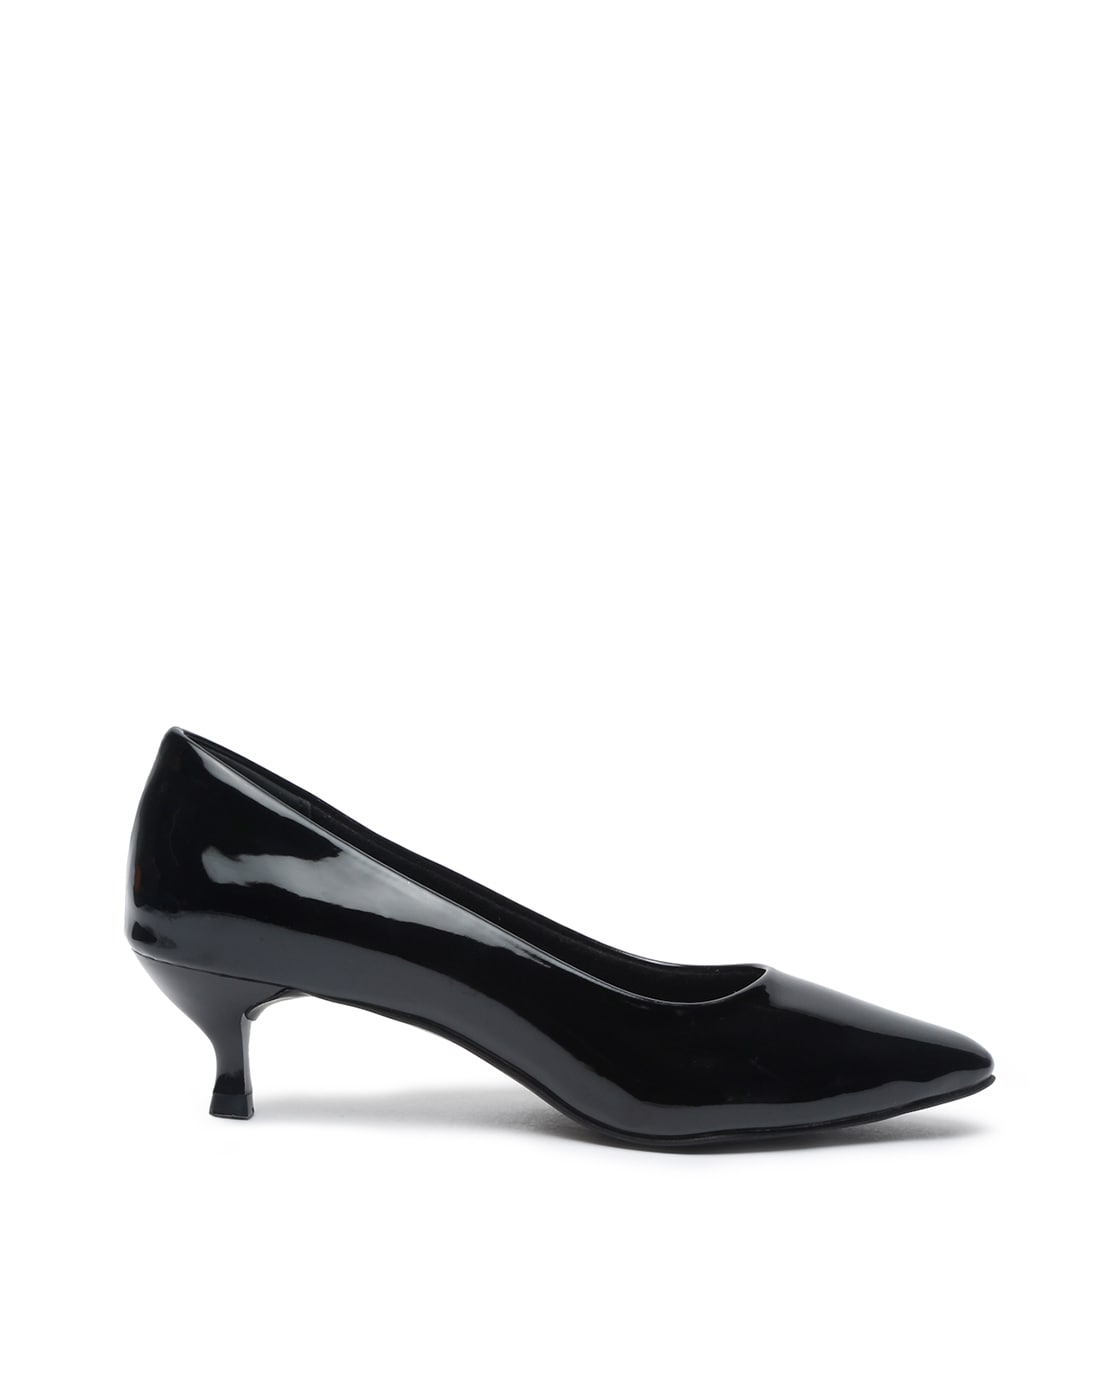 Black bow tie slip on low heel dress shoe | Womens heel dress shoes online  2092WS